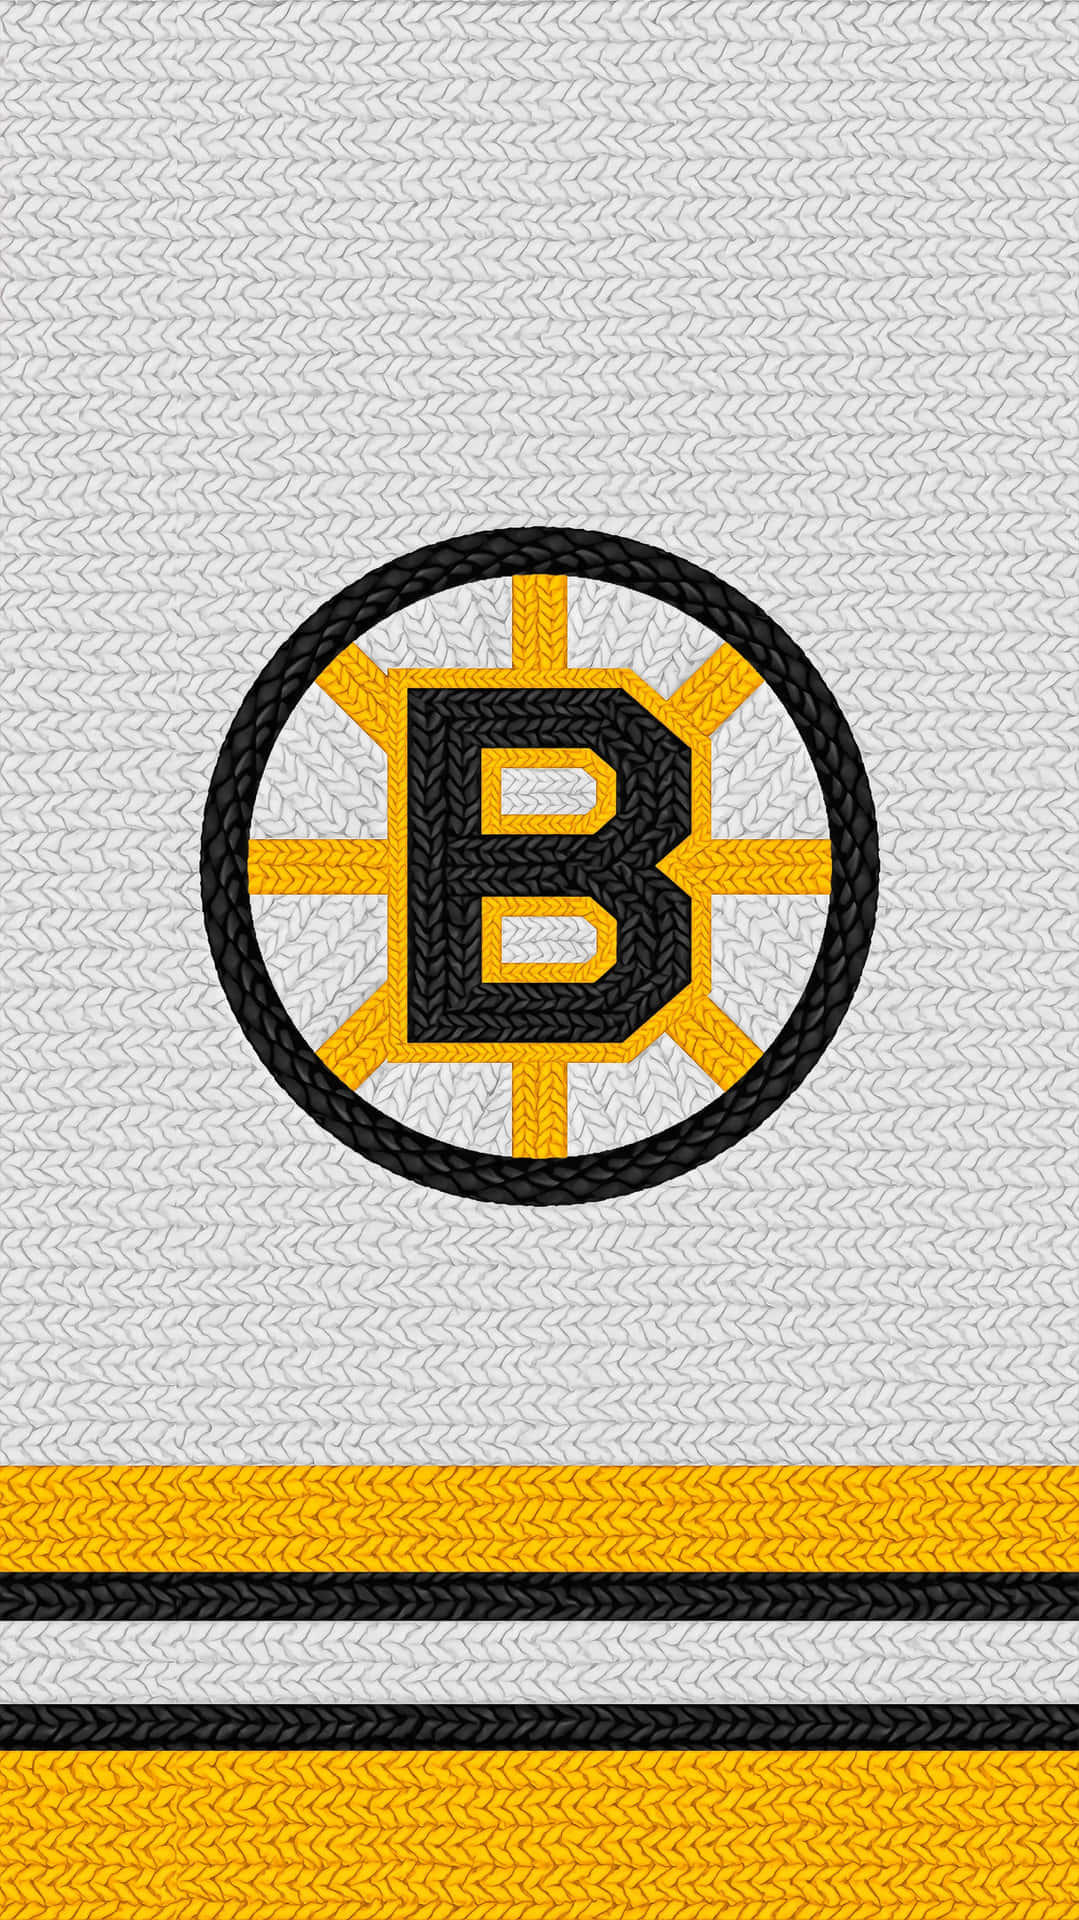 Fejrspændingen Ved Ishockey Med Boston Bruins.